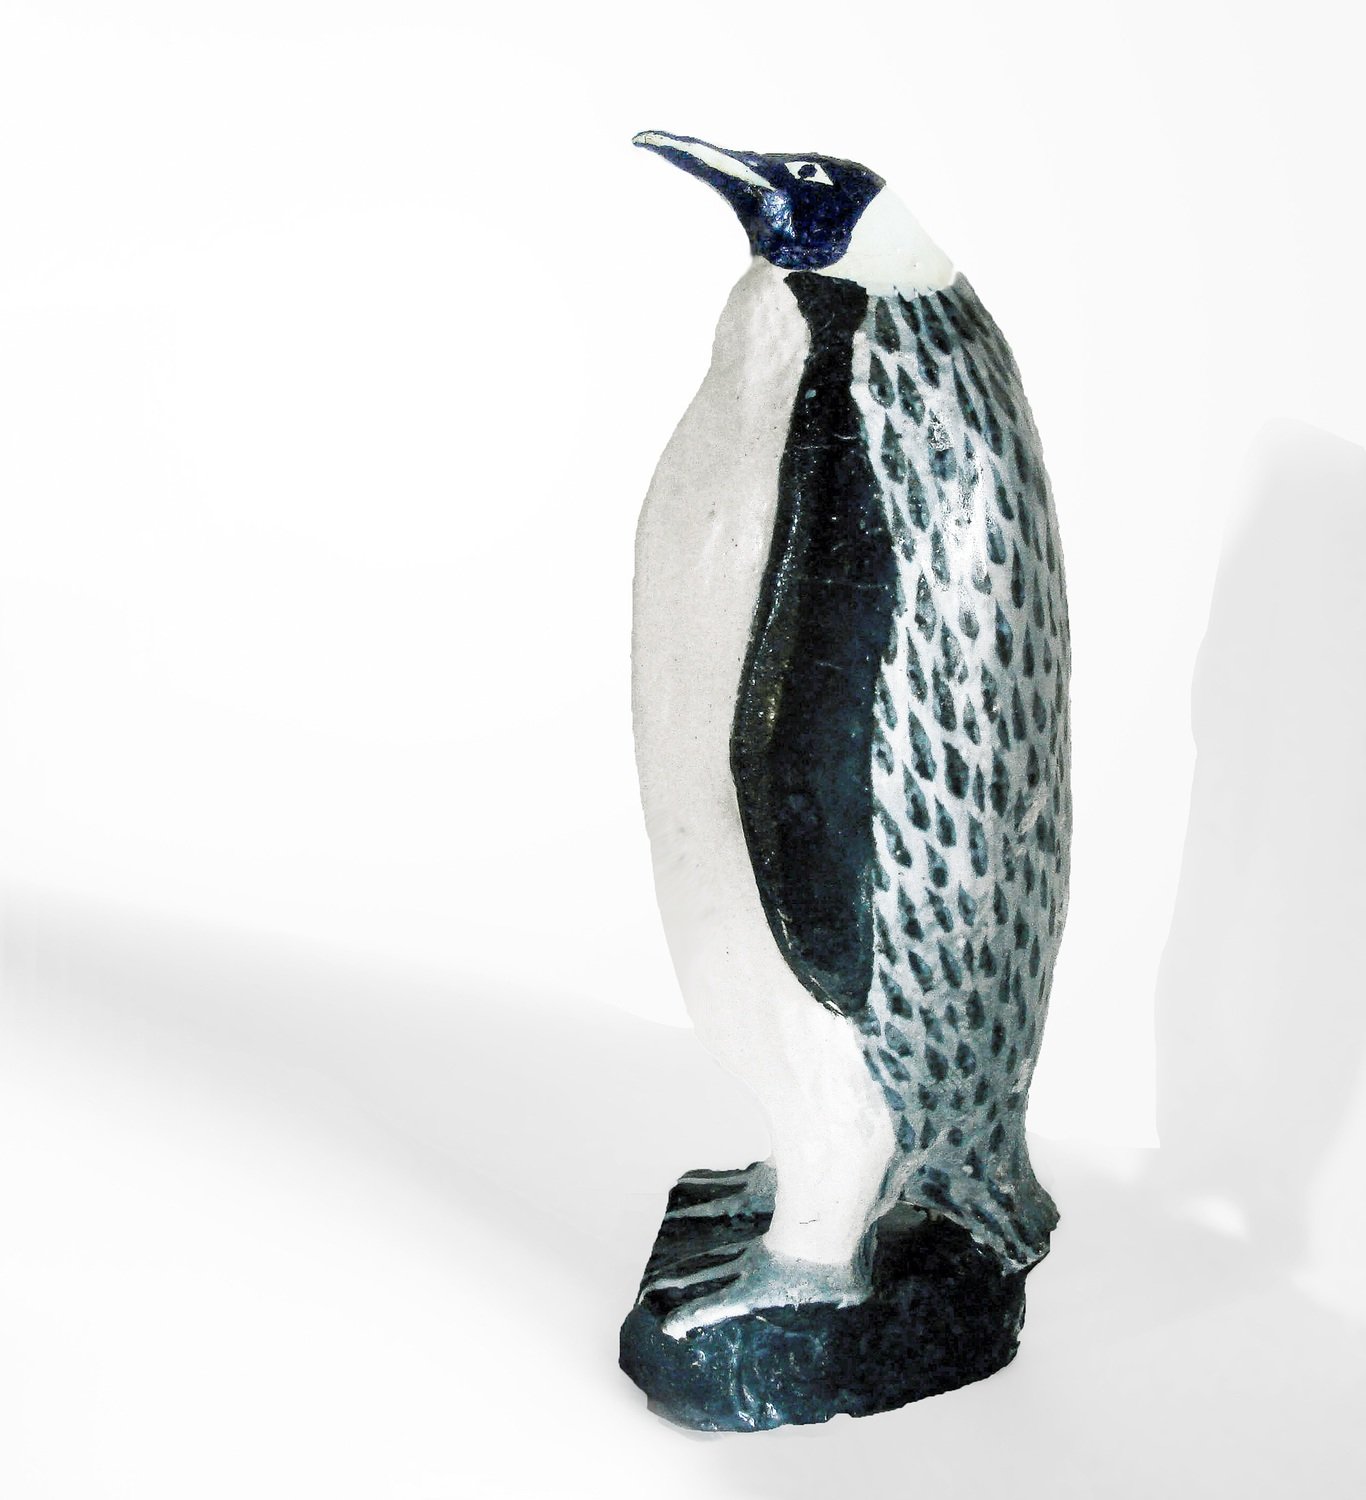 Rare Ceramic Vintage Emperor Penguin Prototype by Weston Neil Andersen